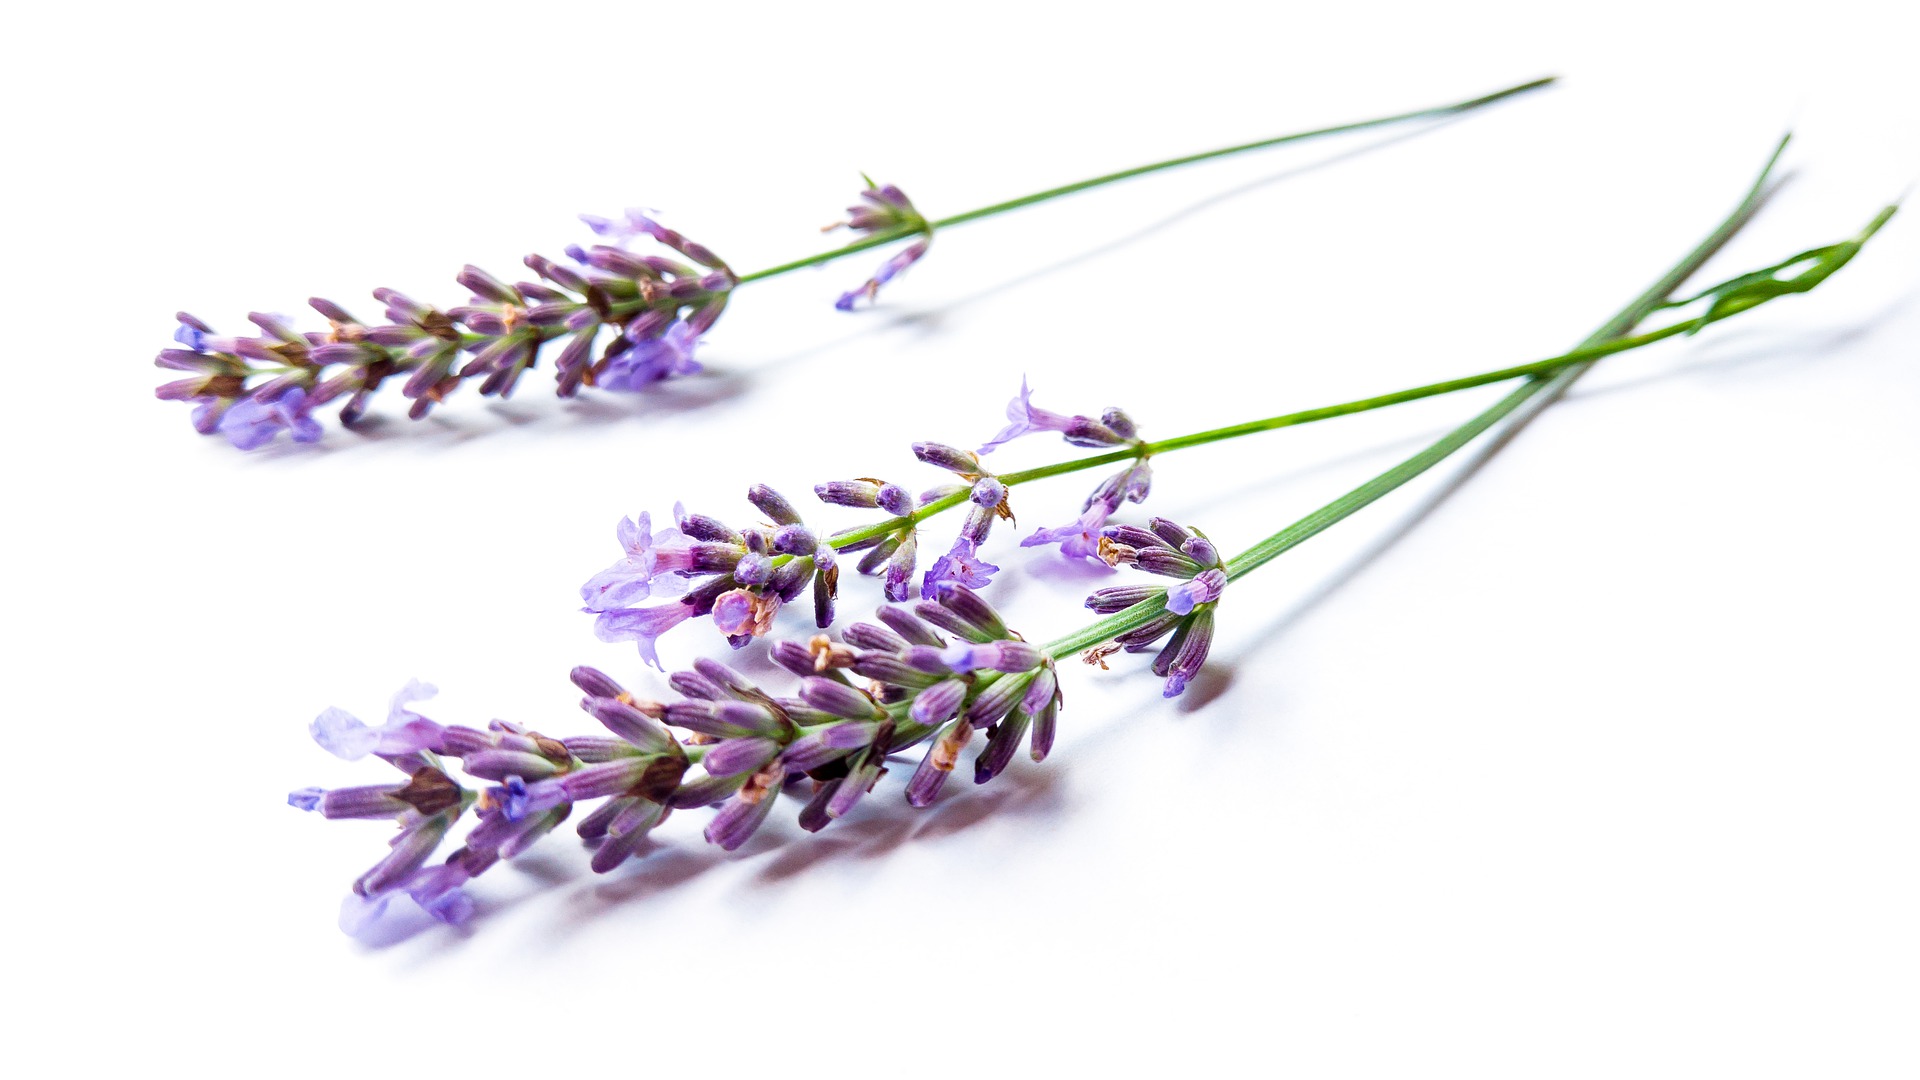 Lavendel - auch beim Kochen verwendbar